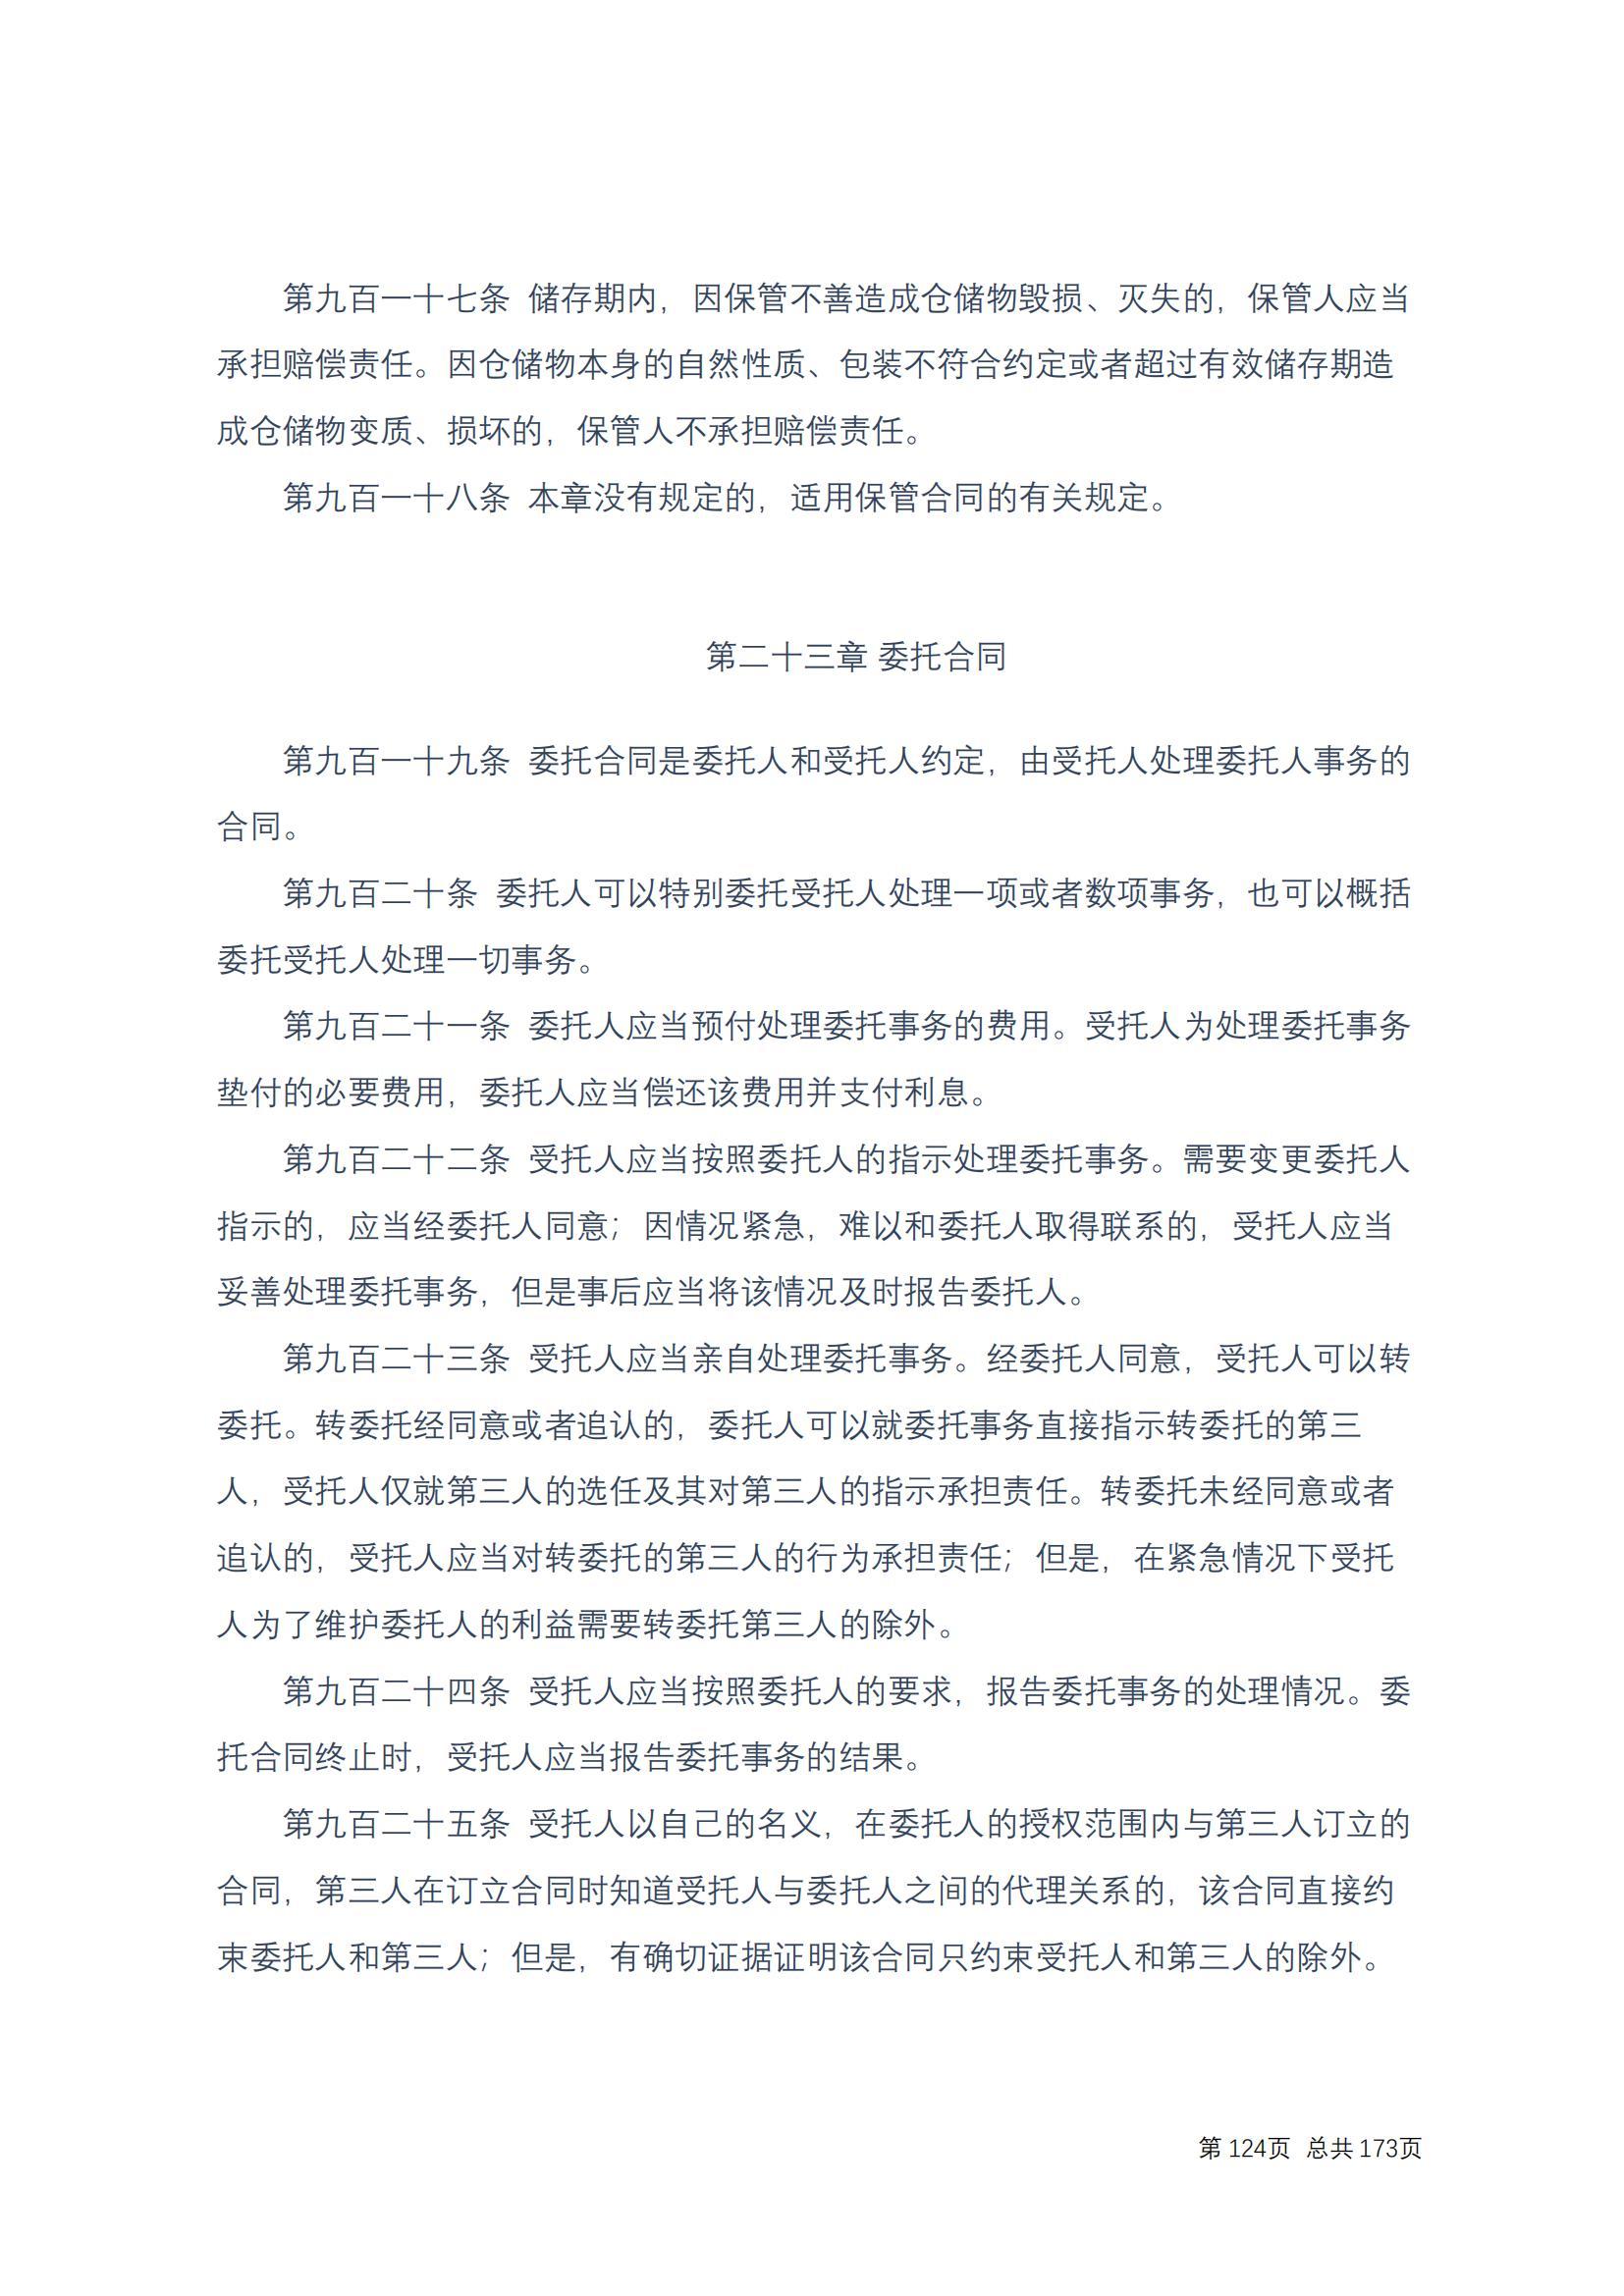 中华人民共和国民法典 修改过_123